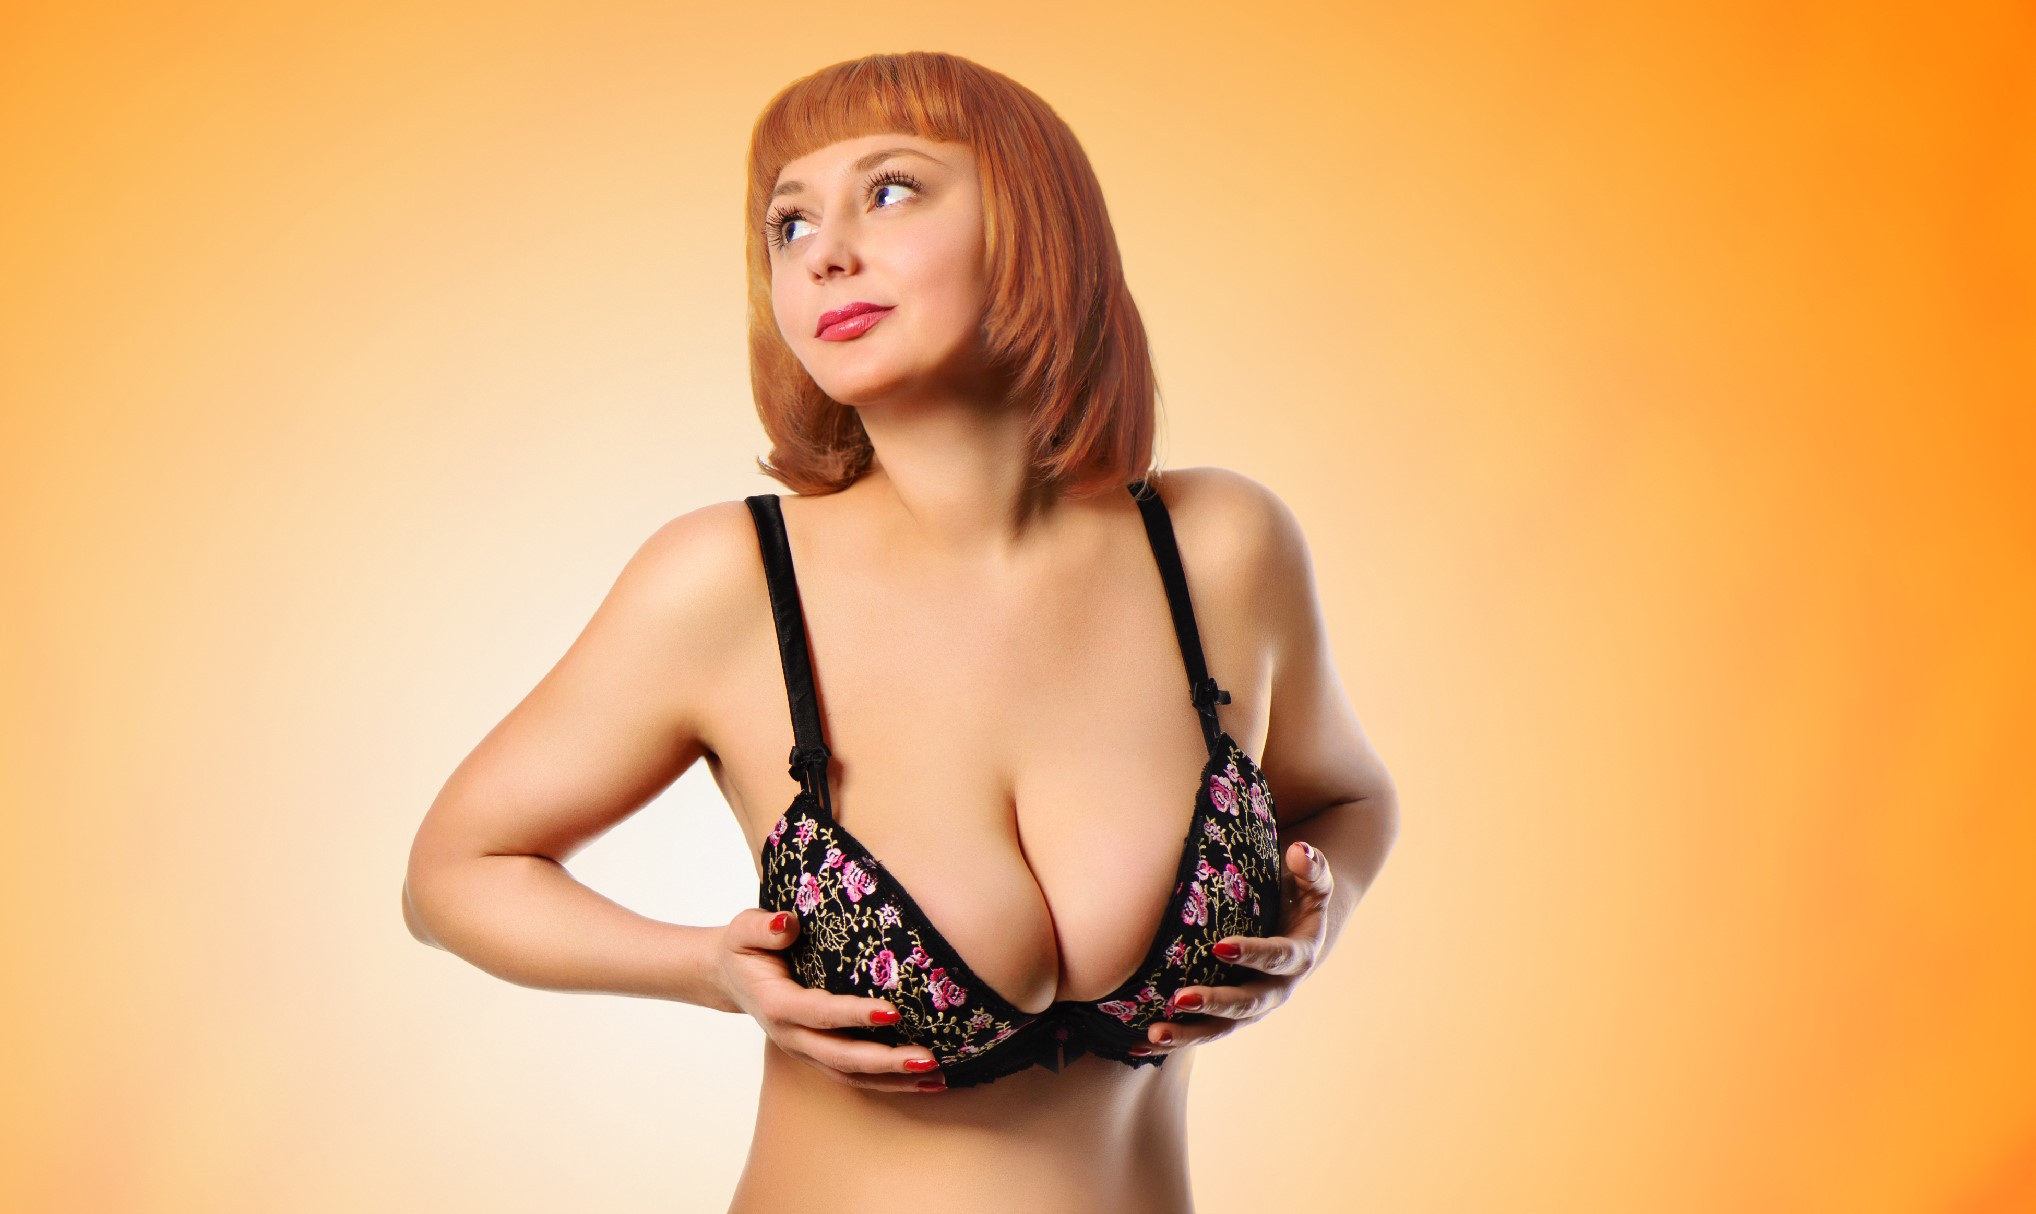 «Размер имеет значение»: ученые выяснили, что женщины с большой грудью проще переносят жару — завидуем молча